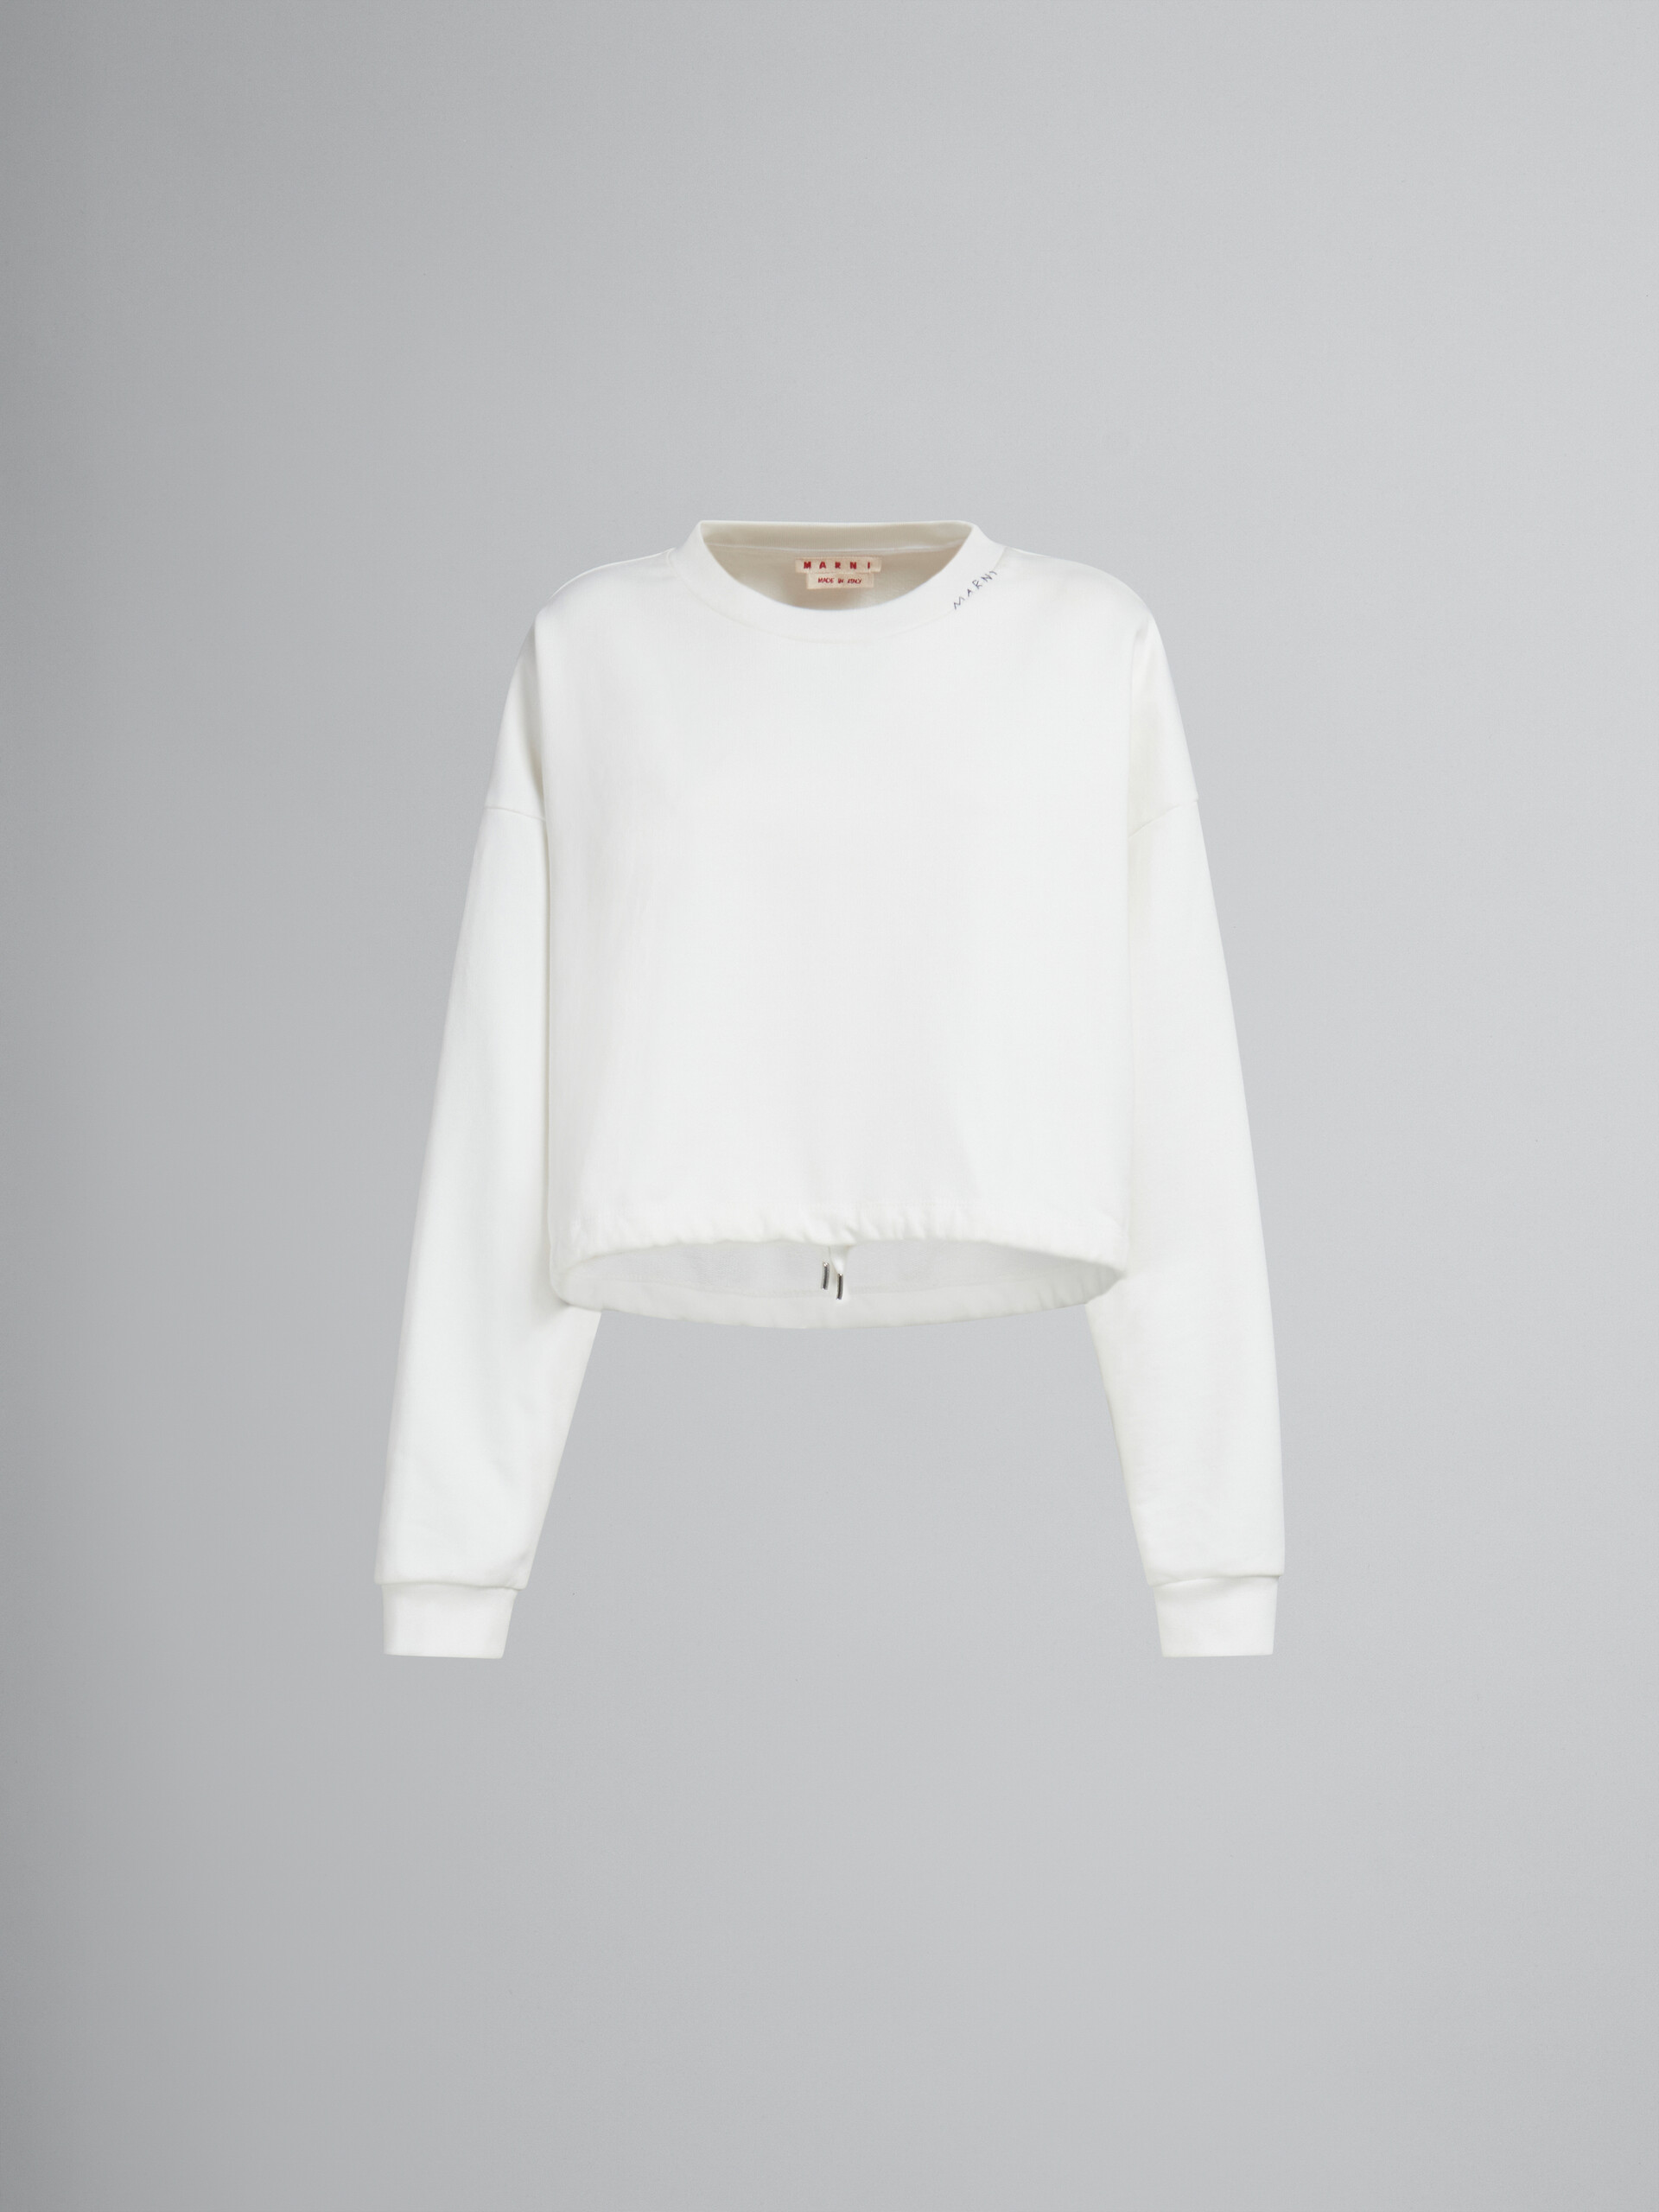 ホワイト オーガニックコットン製スウェットシャツ、すそにドローストリング - ニット - Image 1